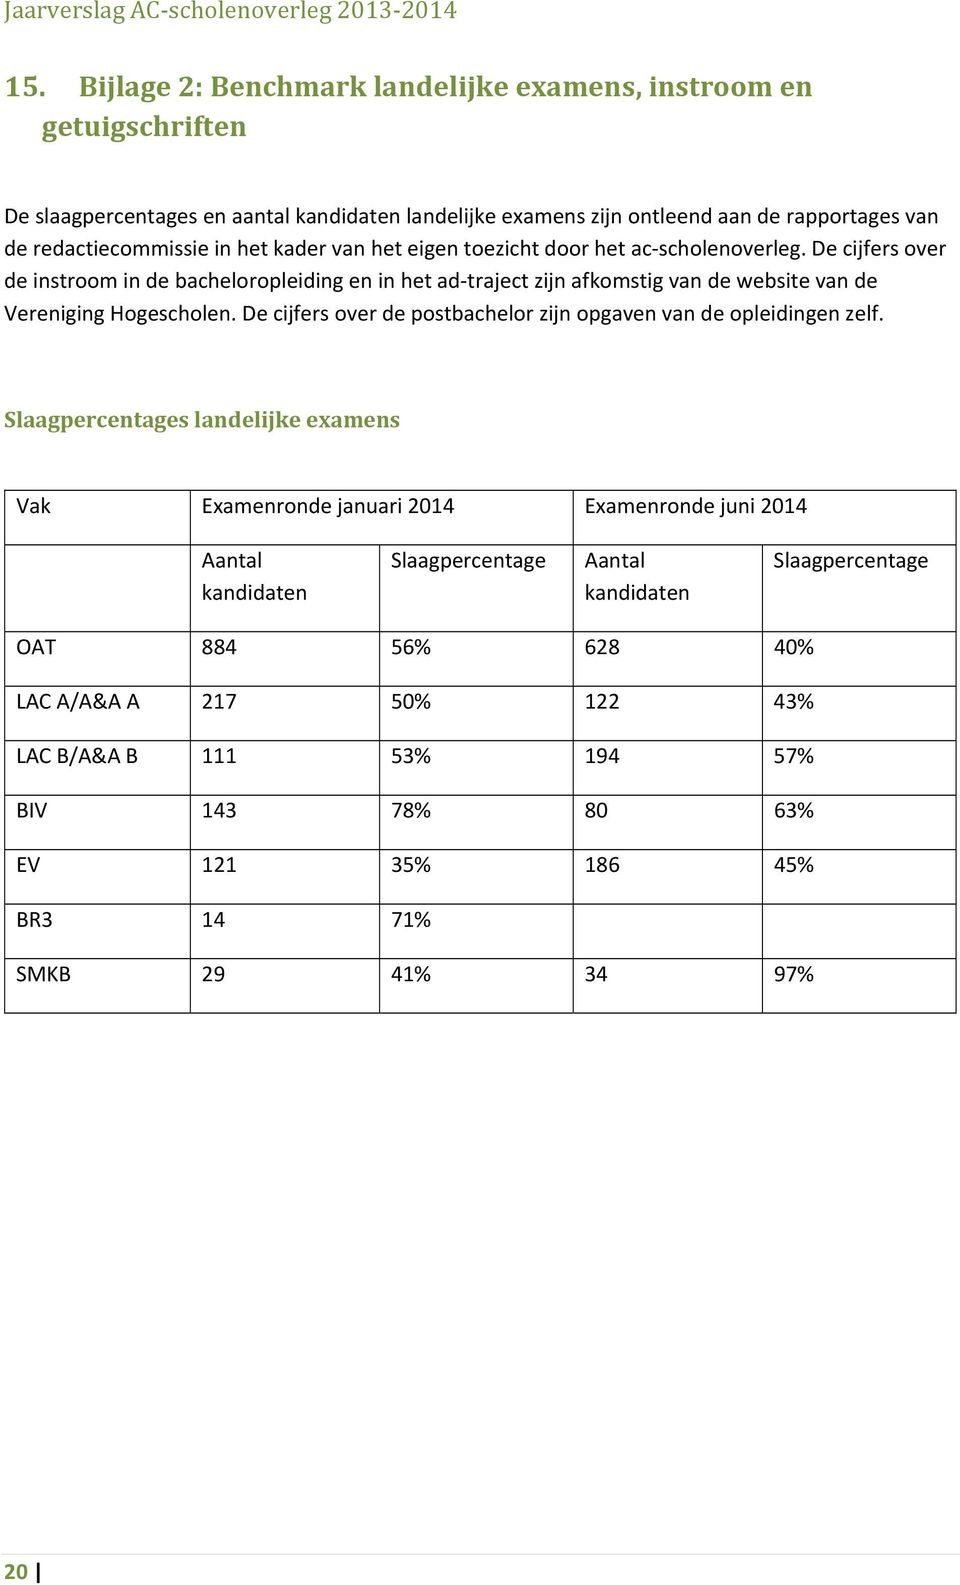 De cijfers over de instroom in de bacheloropleiding en in het ad traject zijn afkomstig van de website van de Vereniging Hogescholen.